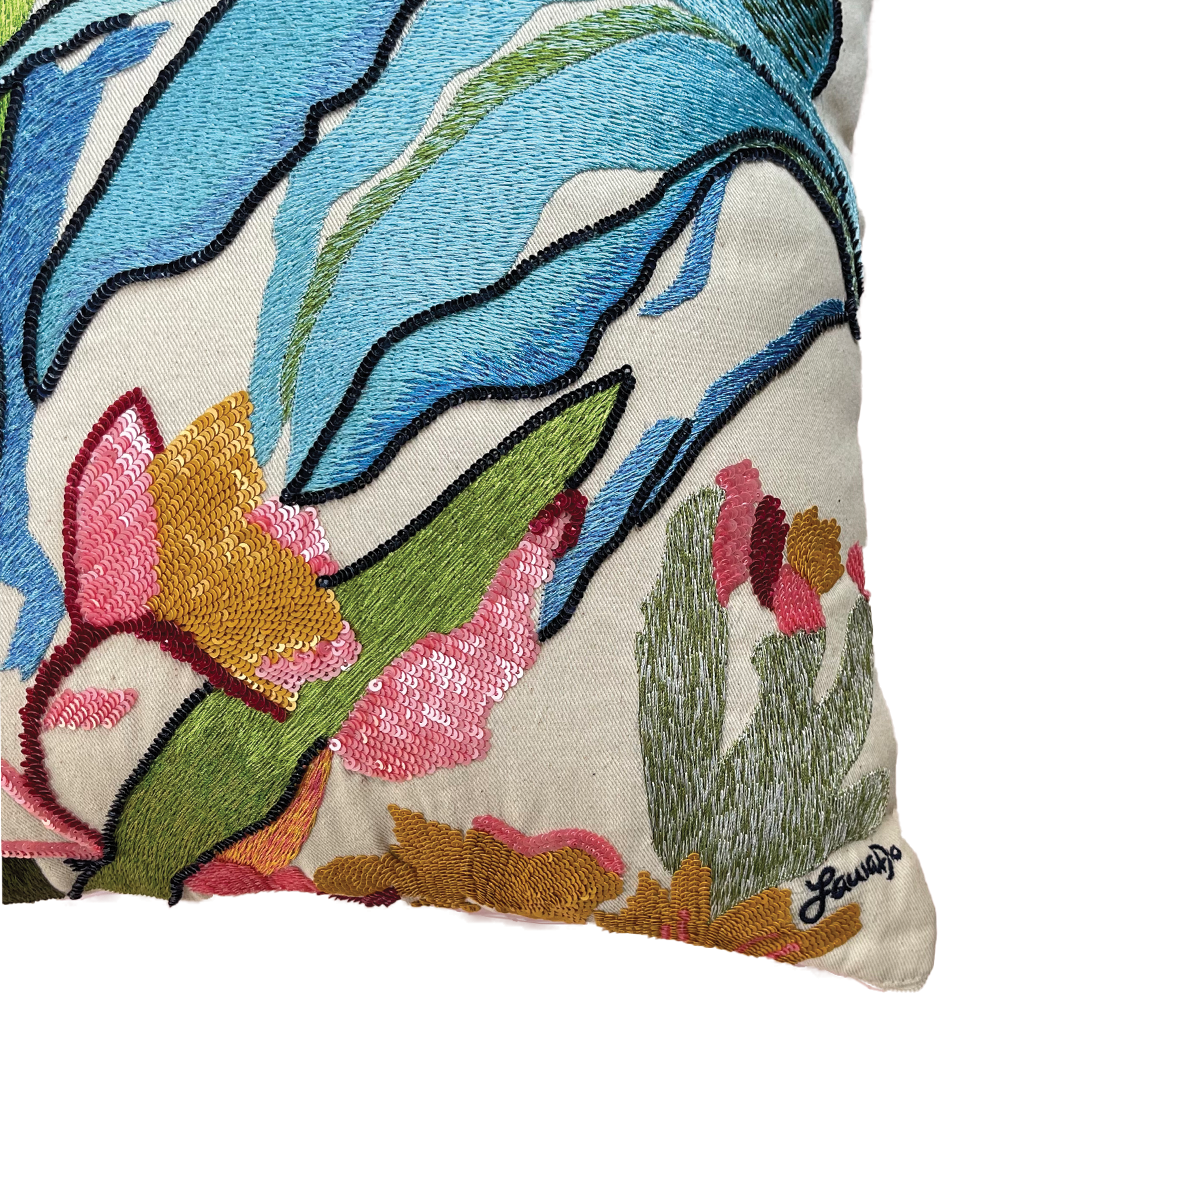 WHOLESALE: Botanical Landscape Pillow Cover (Signature Series)